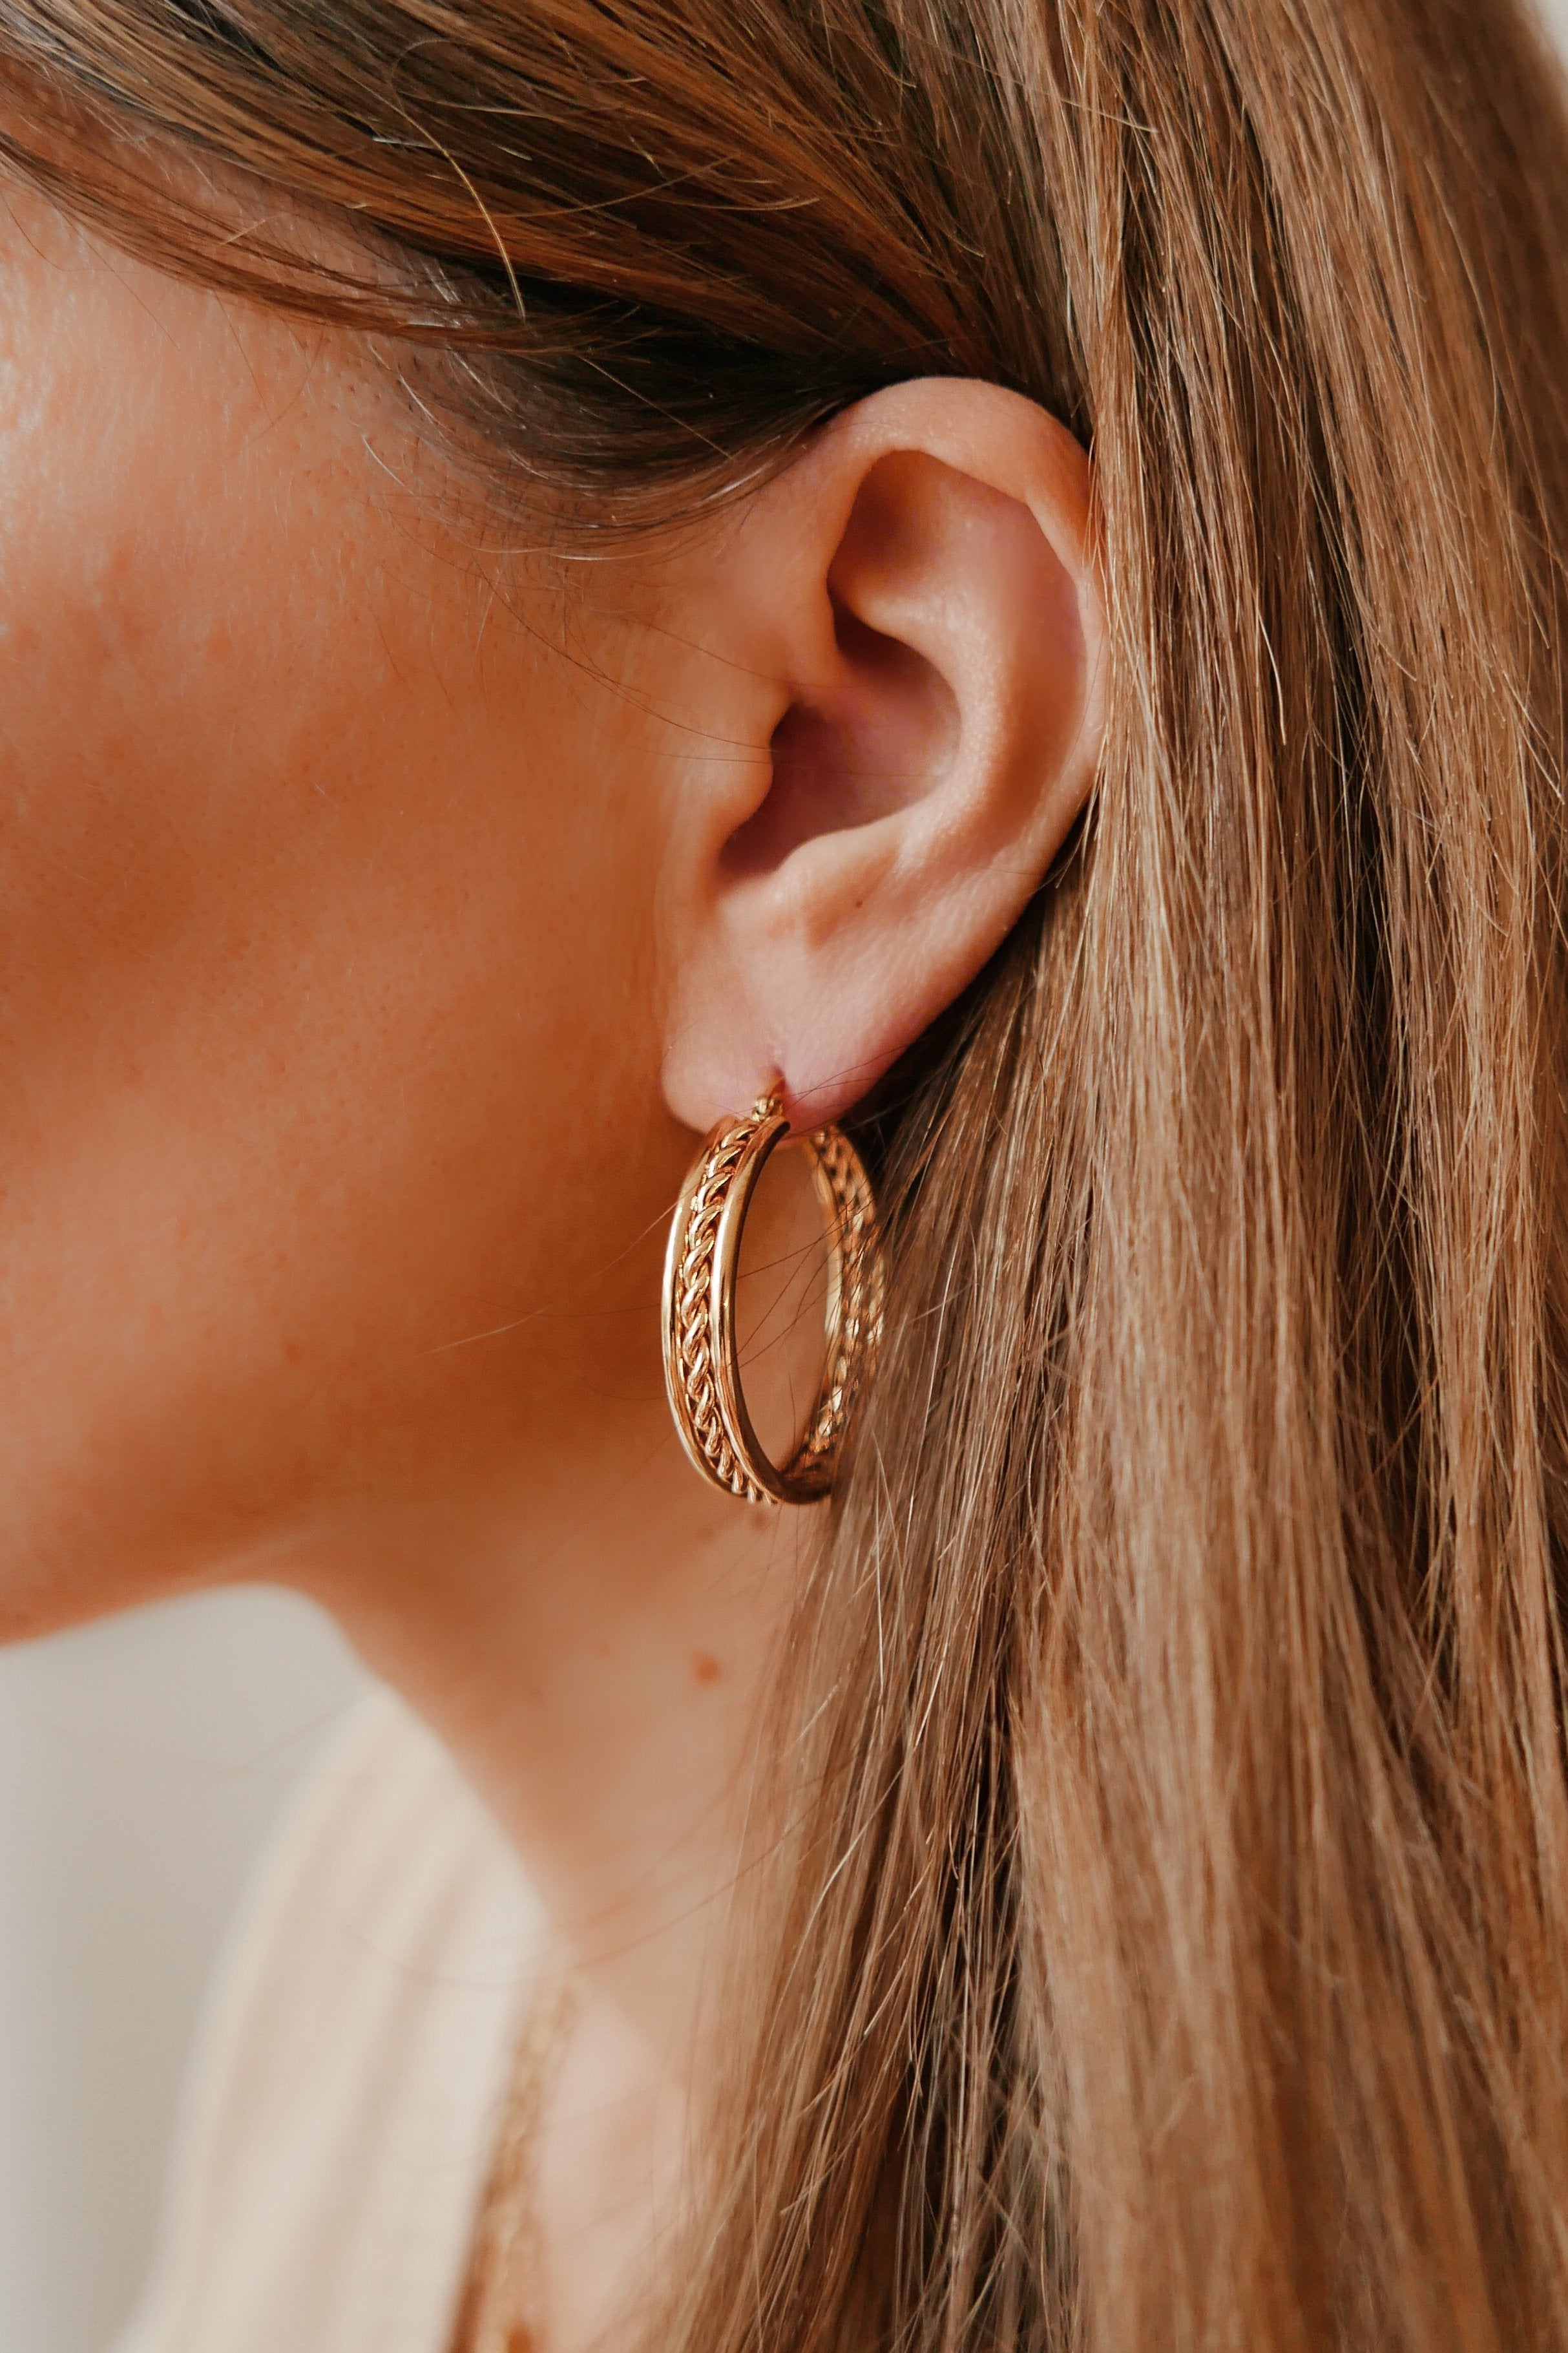 Colette Hoop Earrings - Boutique Minimaliste has waterproof, durable, elegant and vintage inspired jewelry